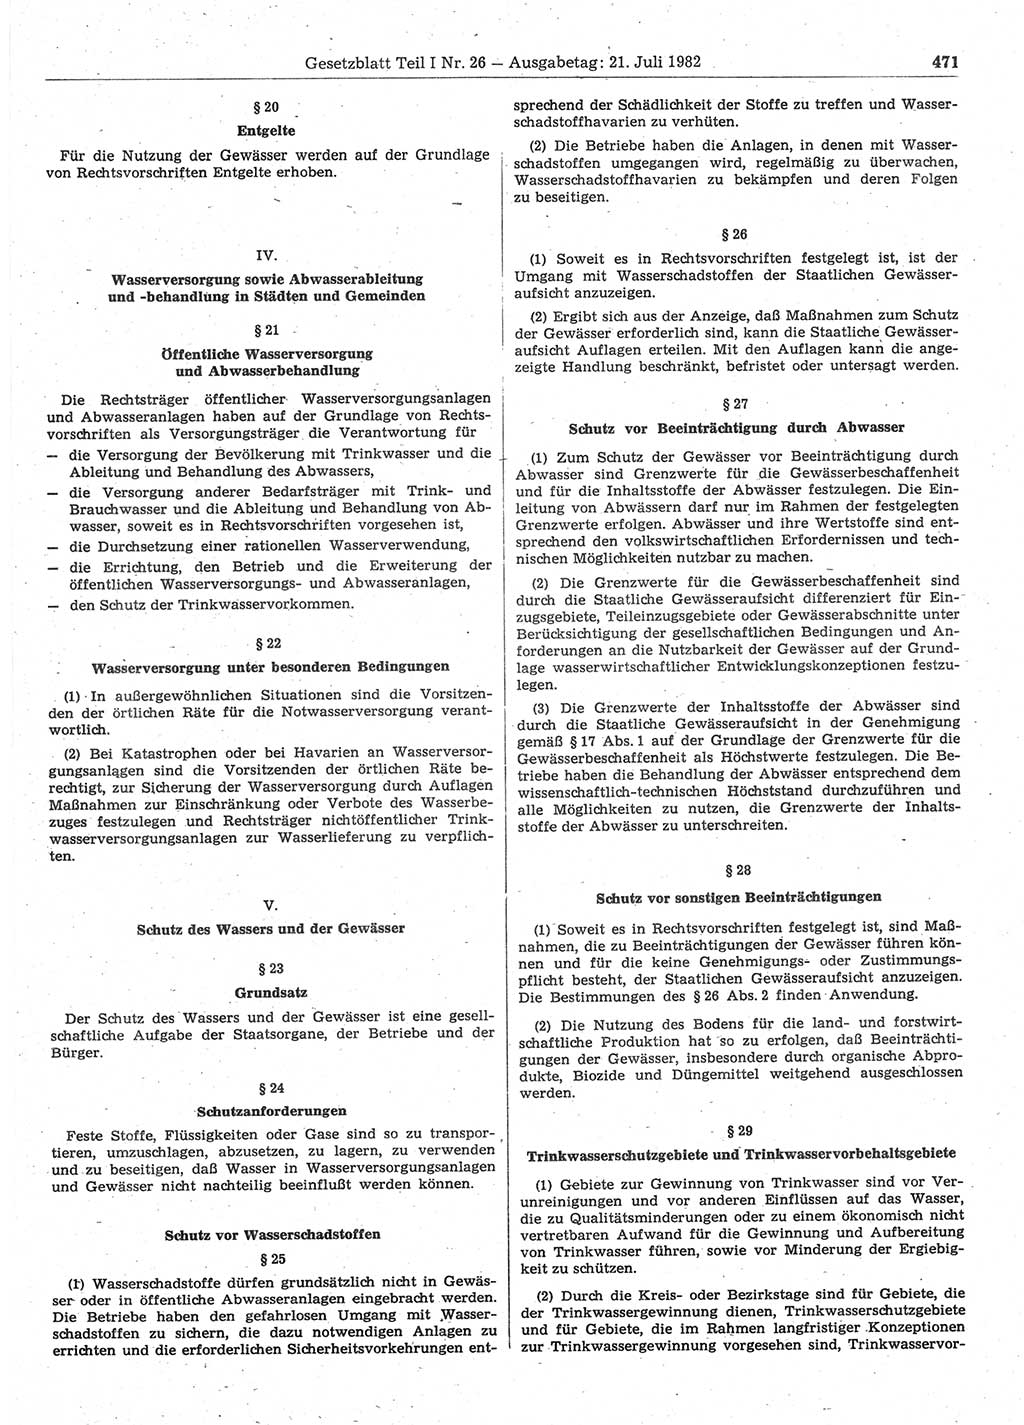 Gesetzblatt (GBl.) der Deutschen Demokratischen Republik (DDR) Teil Ⅰ 1982, Seite 471 (GBl. DDR Ⅰ 1982, S. 471)